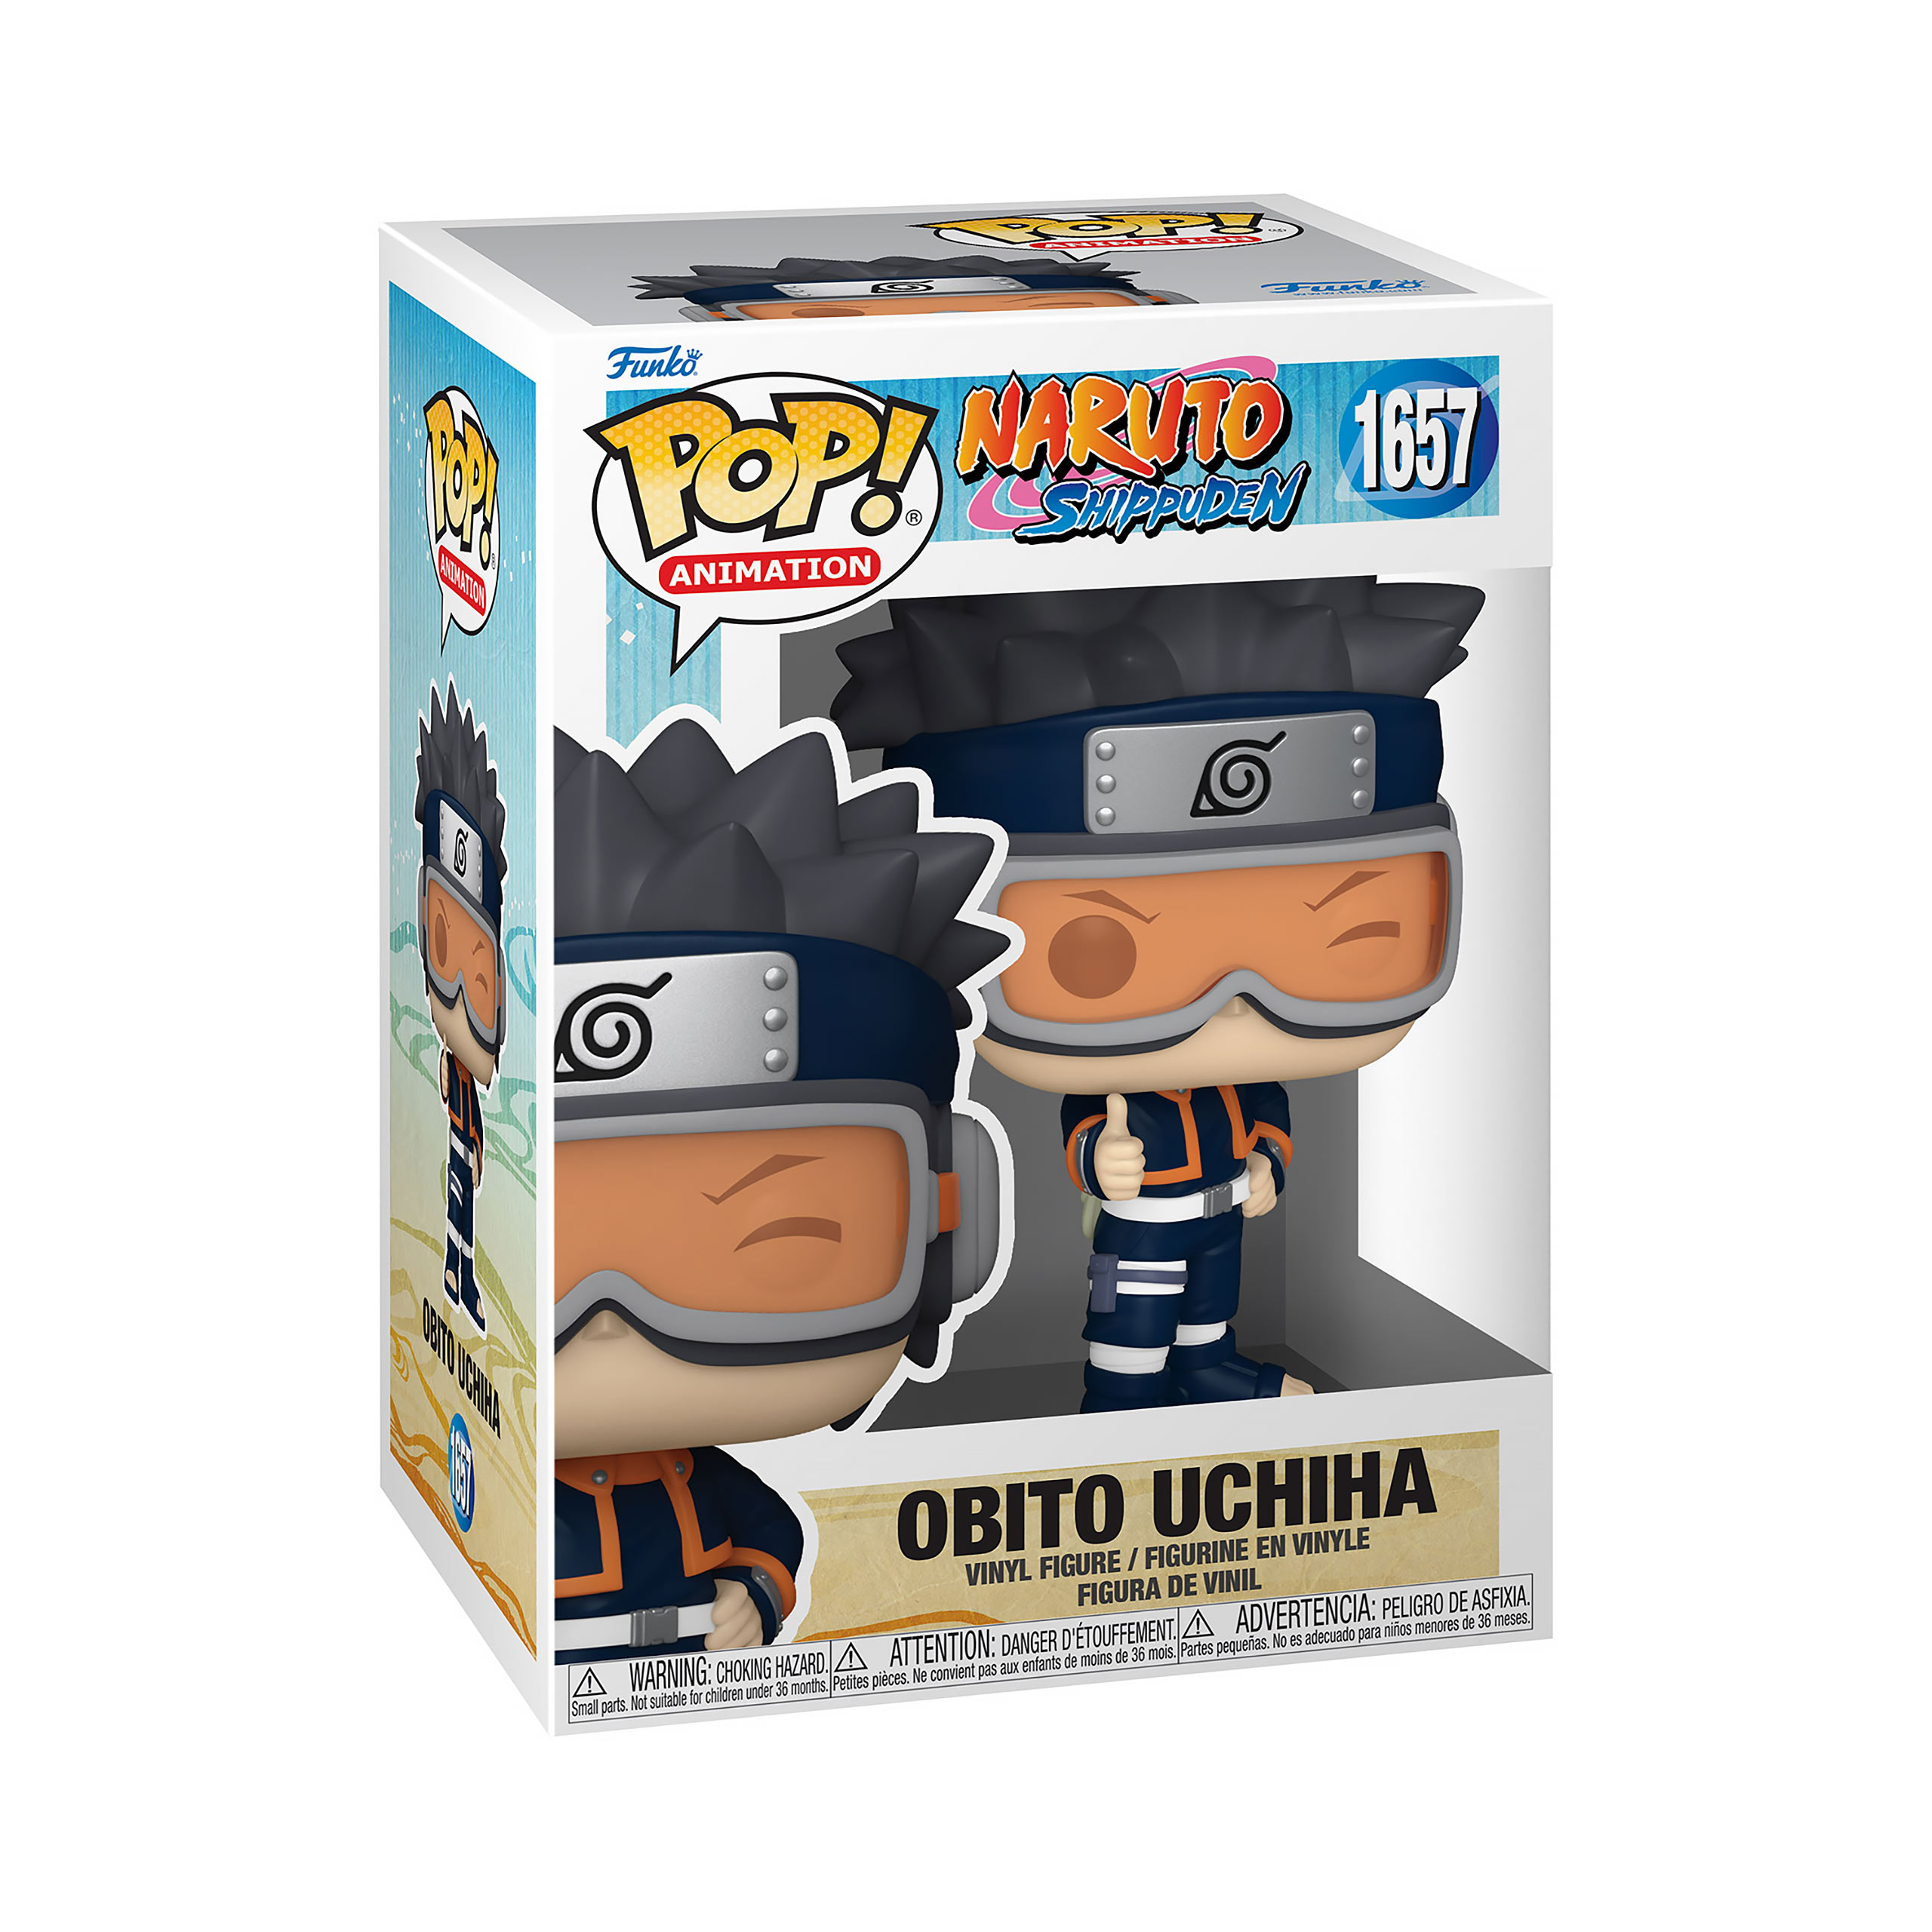 Naruto - Obito Uchiha Child Funko Pop Figure